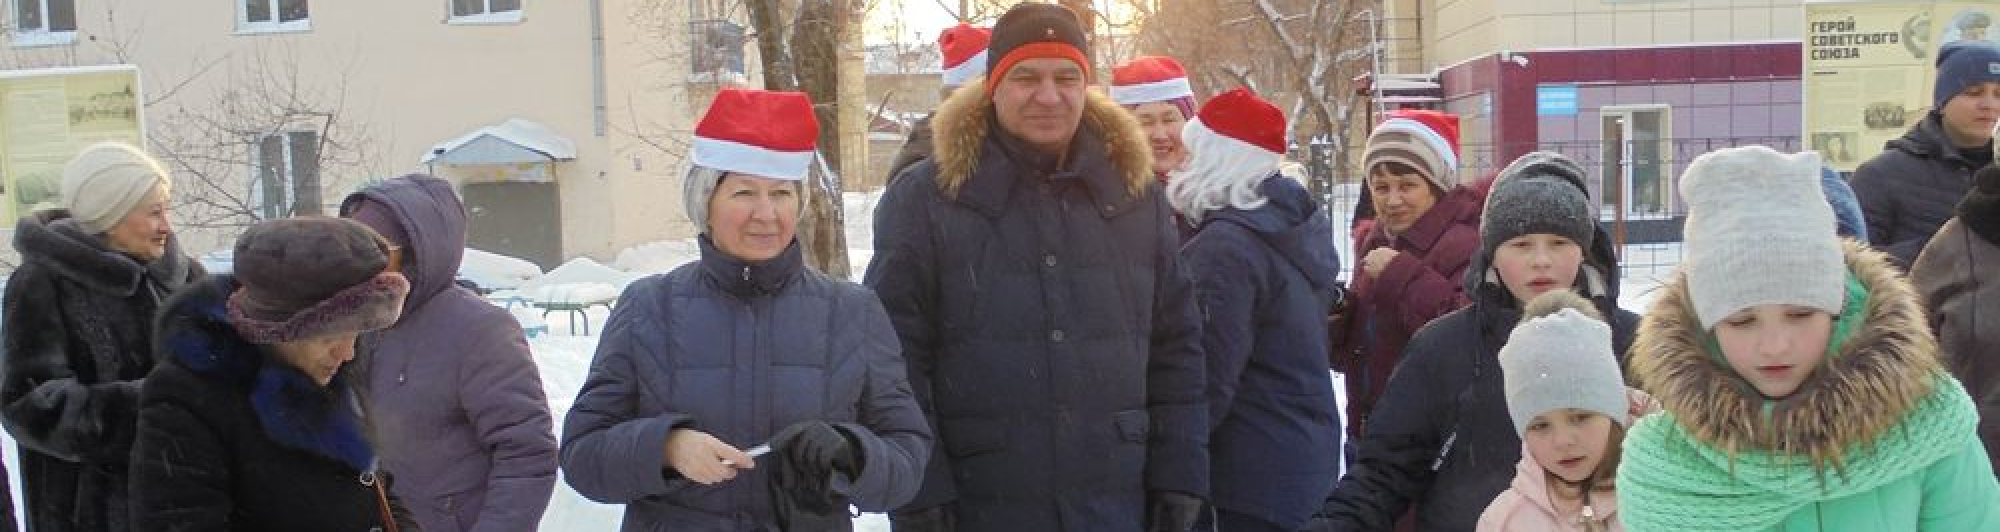 Игорь Морозов принял участие в новогоднем празднике в микрорайоне АРЗ